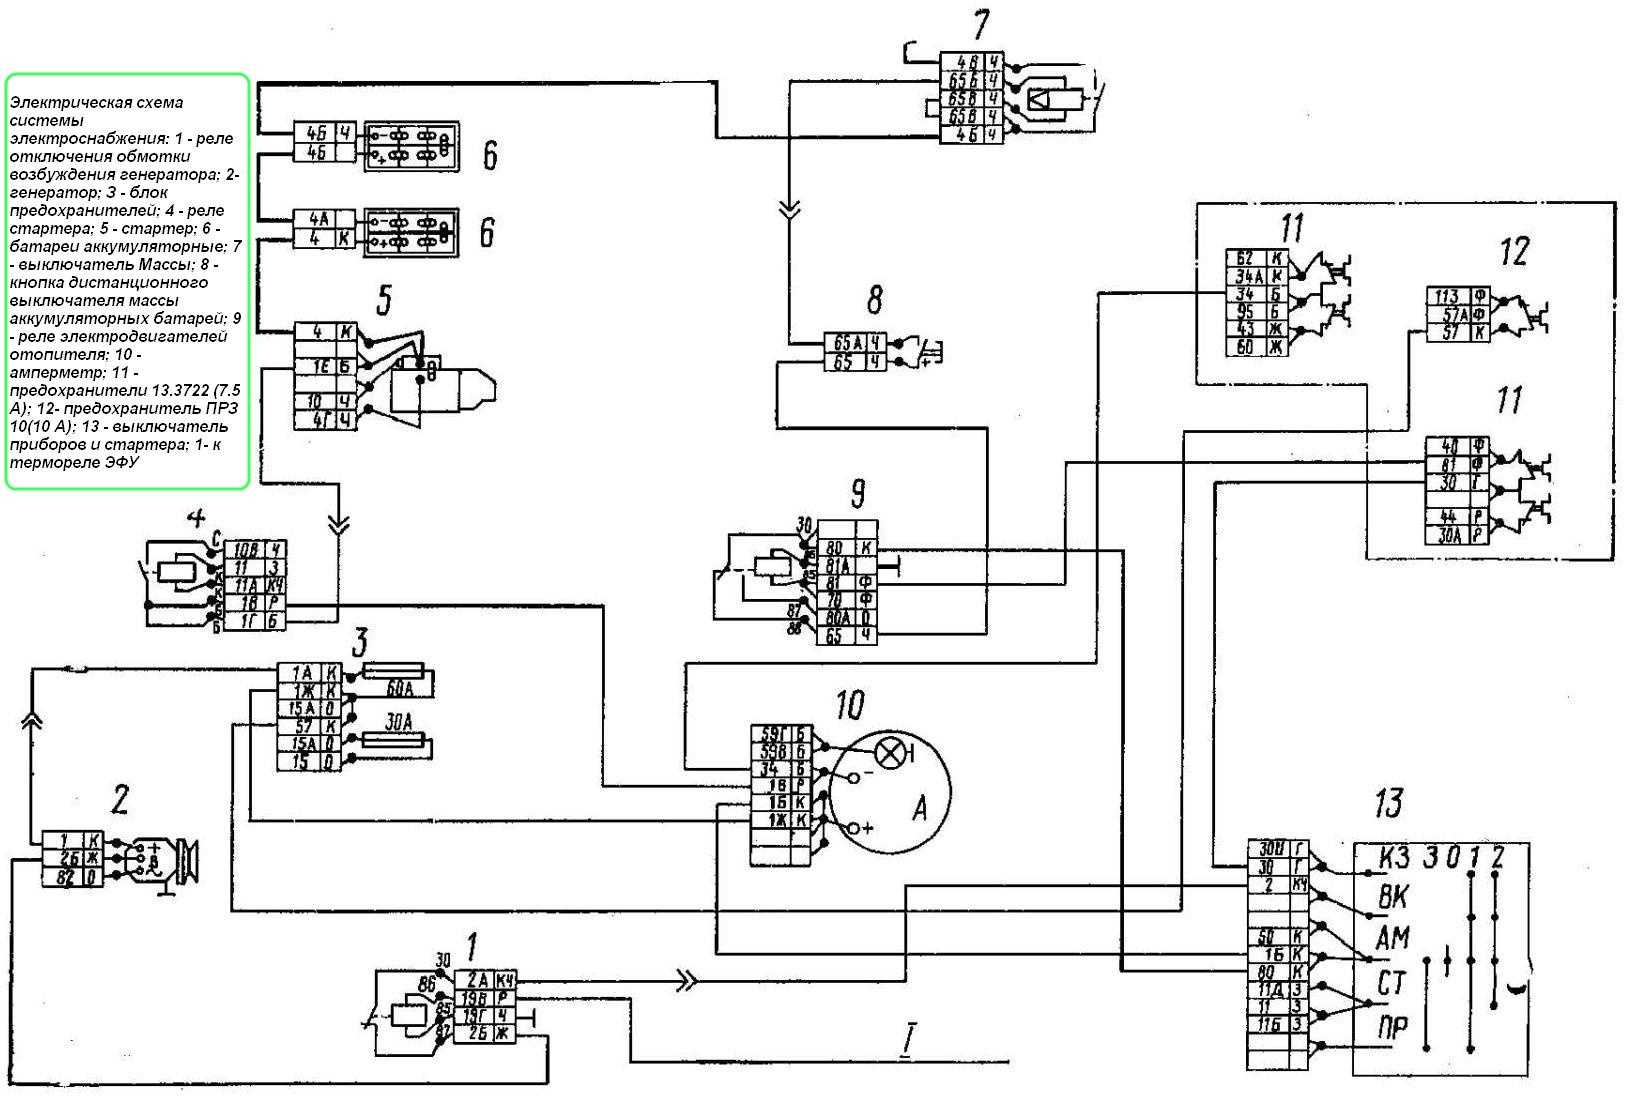 Цветная схема электрооборудования камаз-5320 и 4310 с описанием, поиск проблем с проводкой - автомастер